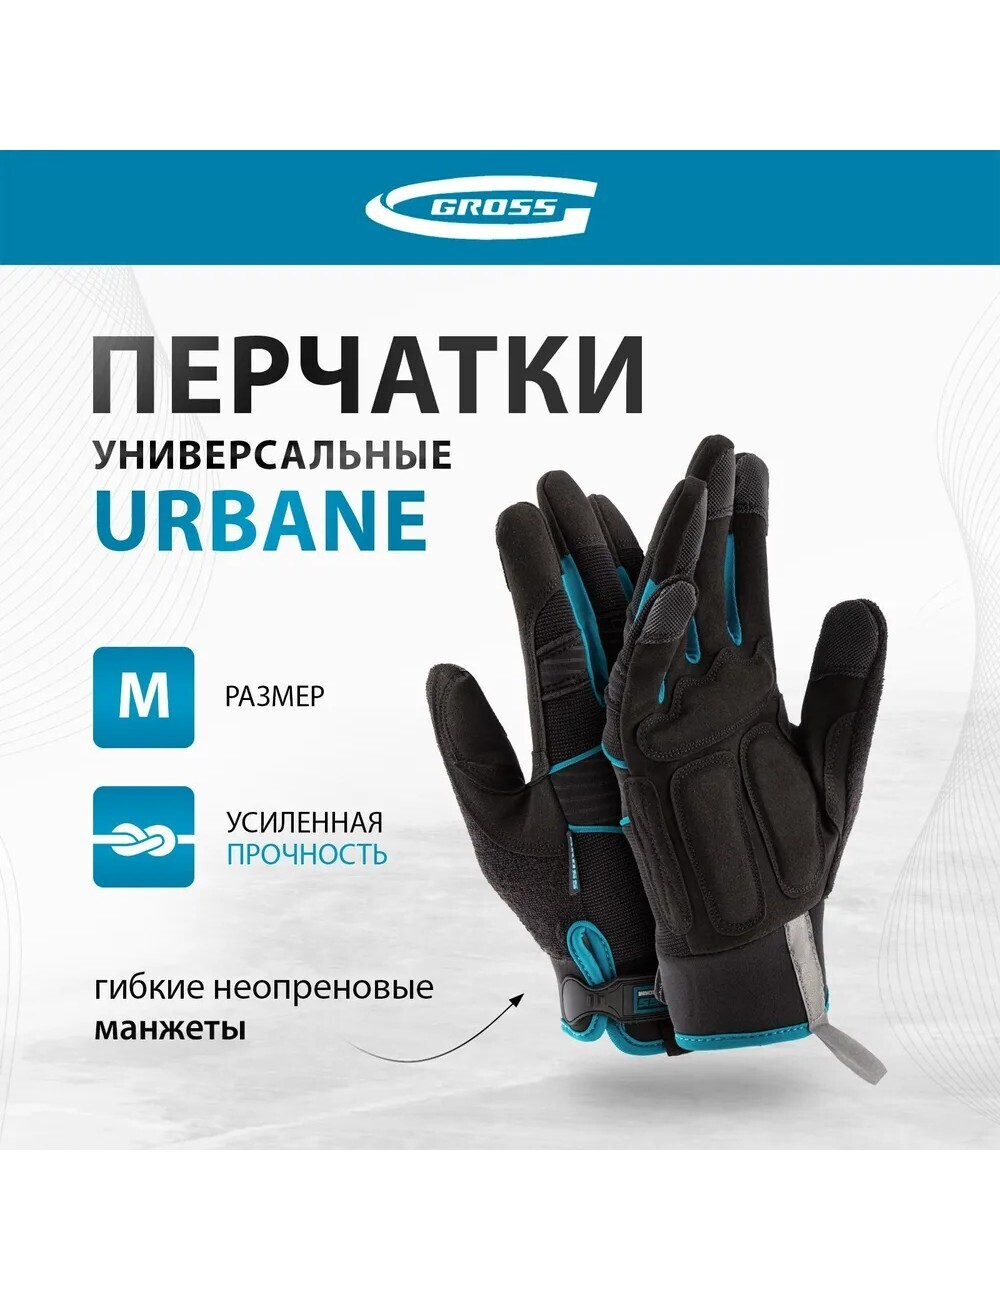 Перчатки Gross URBANE, универсальные, комбинированные, размер L